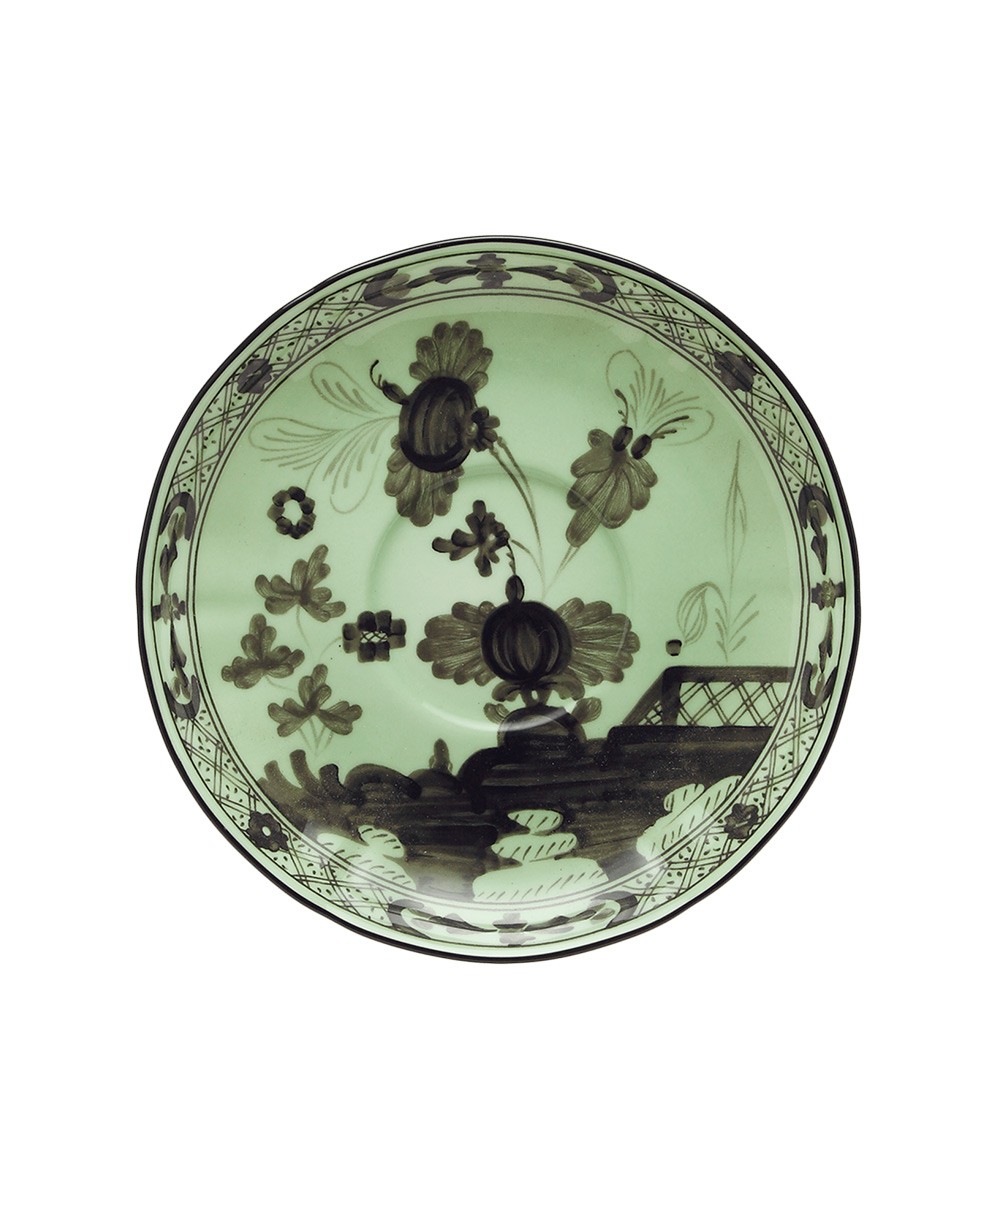 Produktbild "Oriente Bario Tee Untertasse" von Ginori 1735 im RAUM Concept store